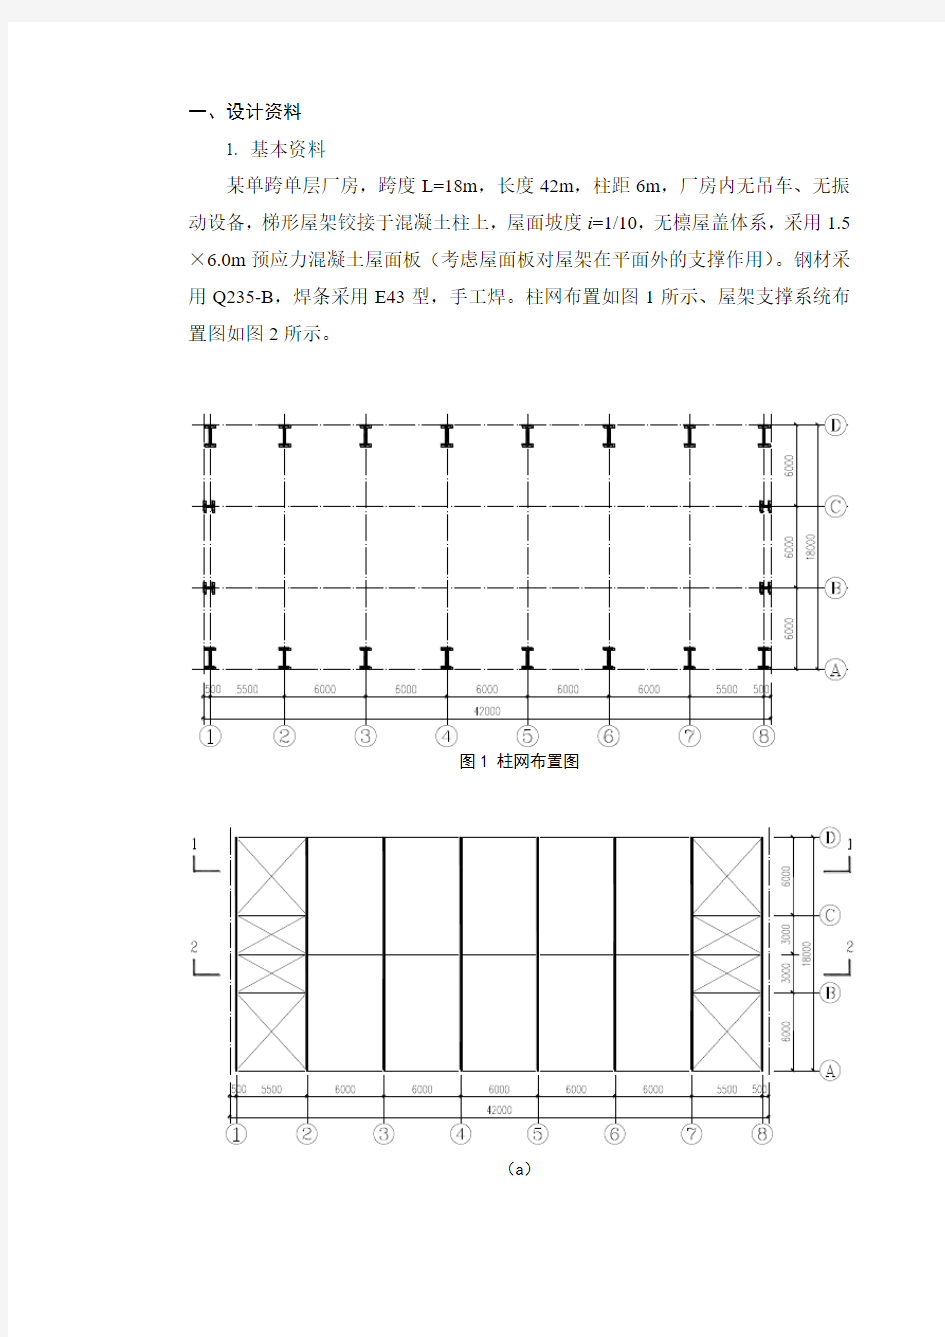 钢结构课程设计任务书(2013.11)5